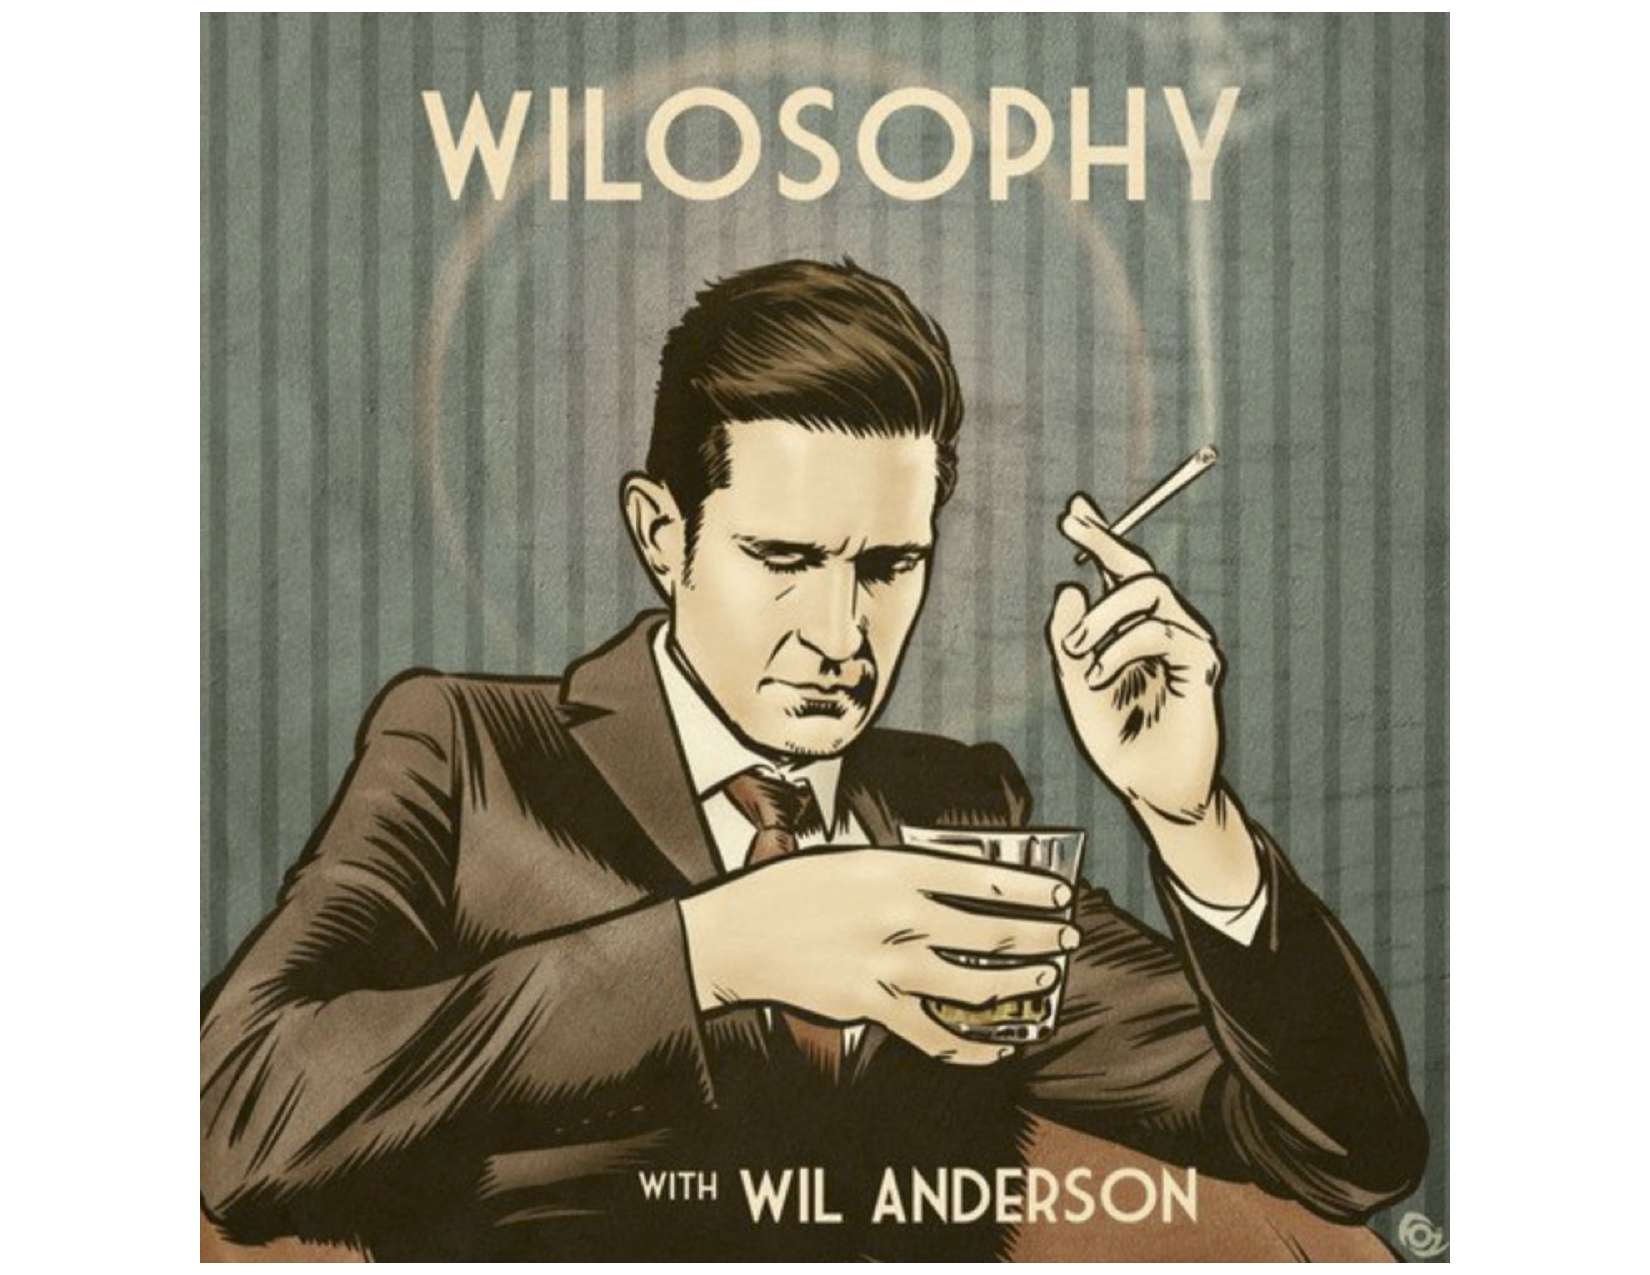 Filozofie s komediálním podcastem Wil Anderson